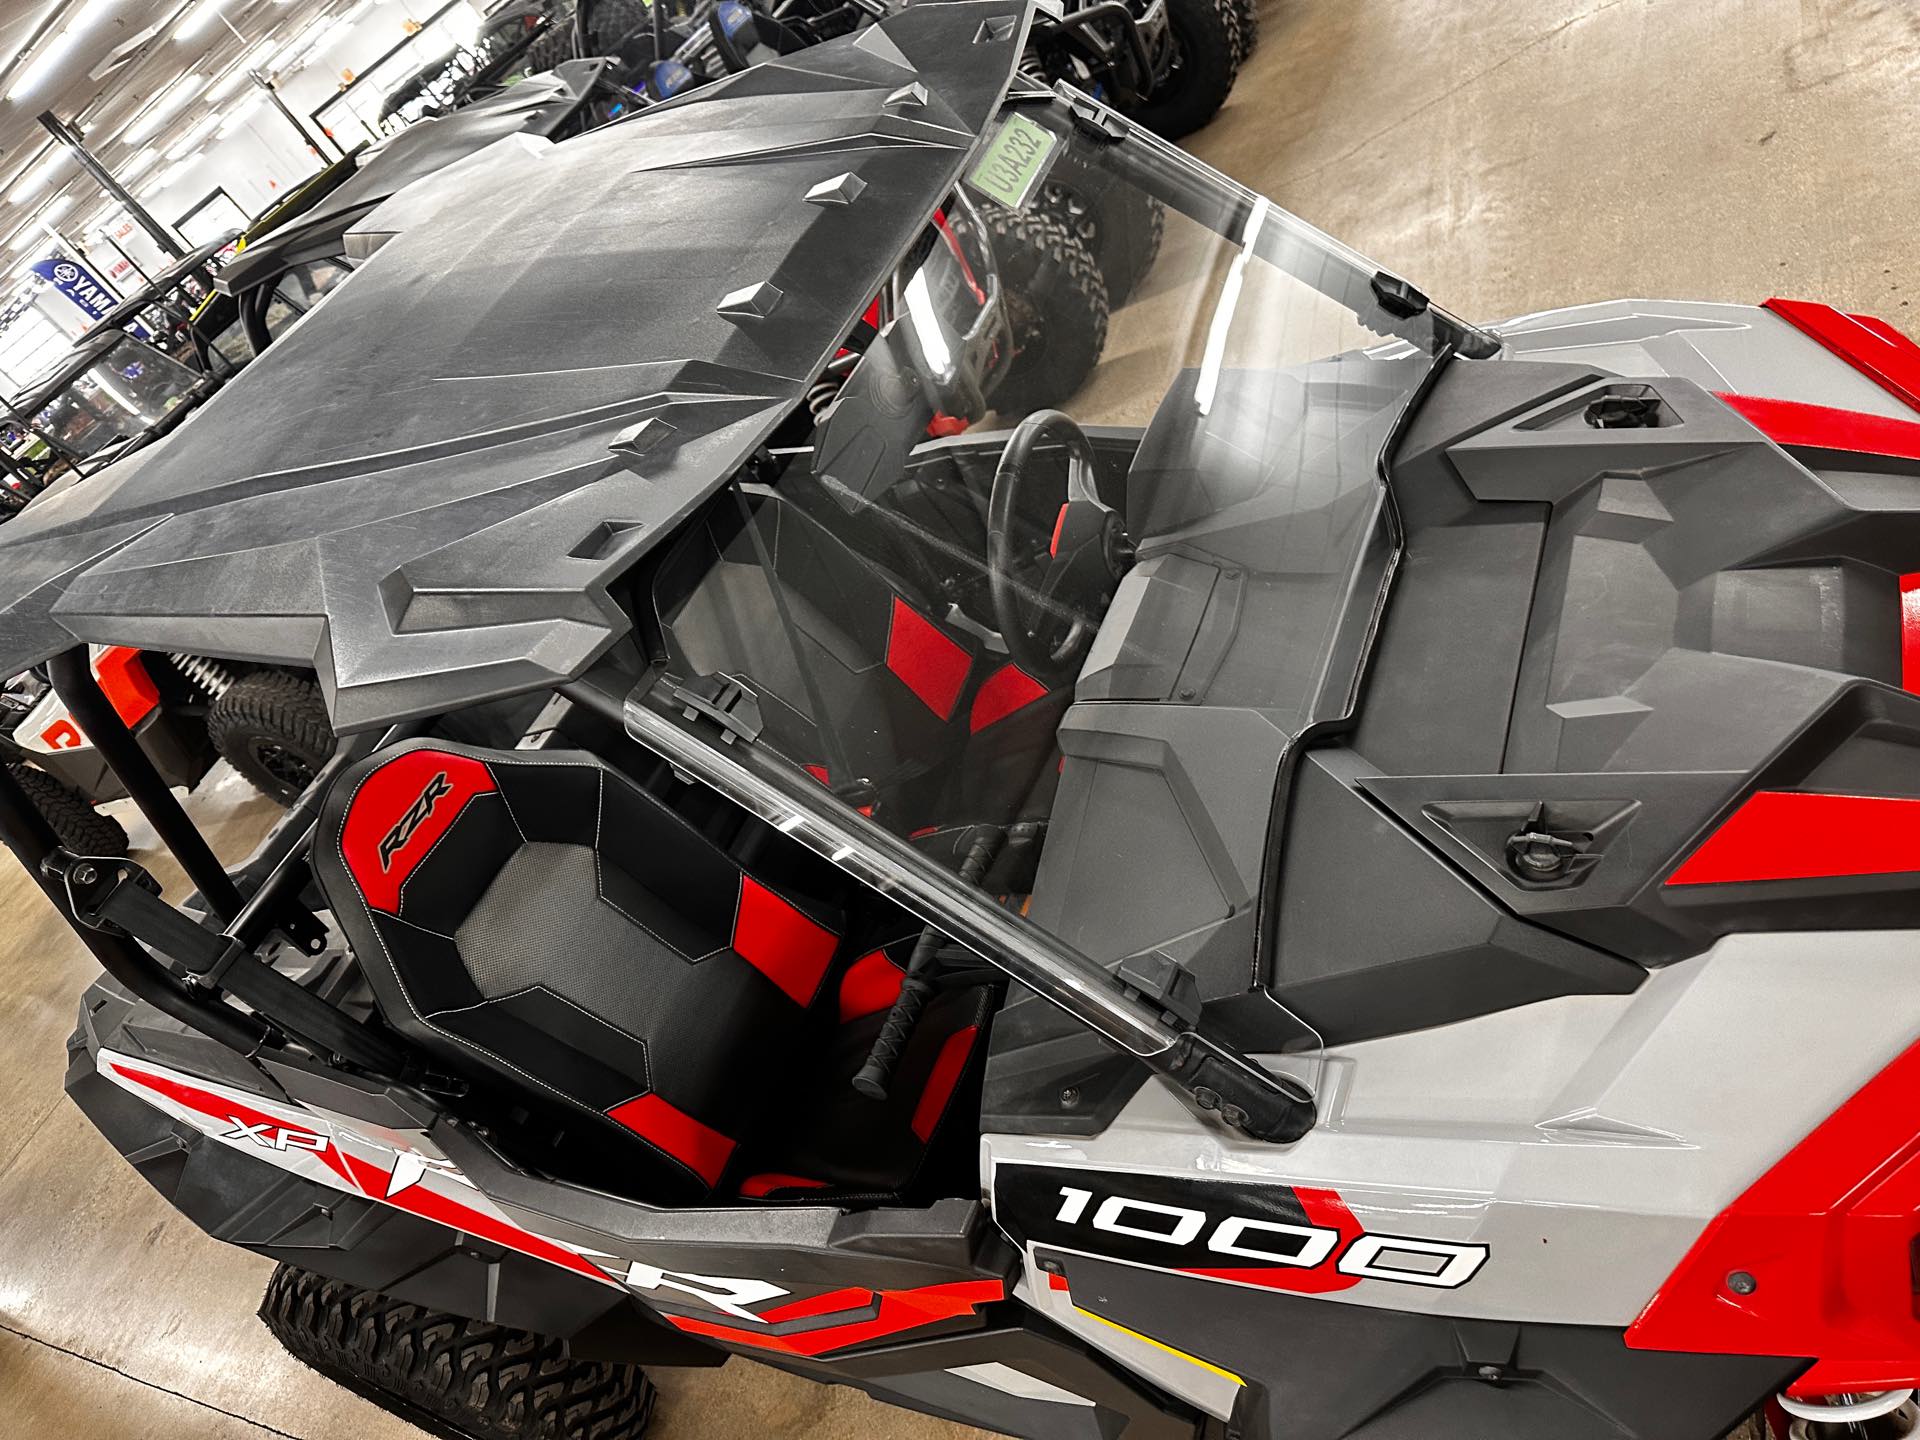 2022 Polaris RZR XP 1000 Premium at ATVs and More